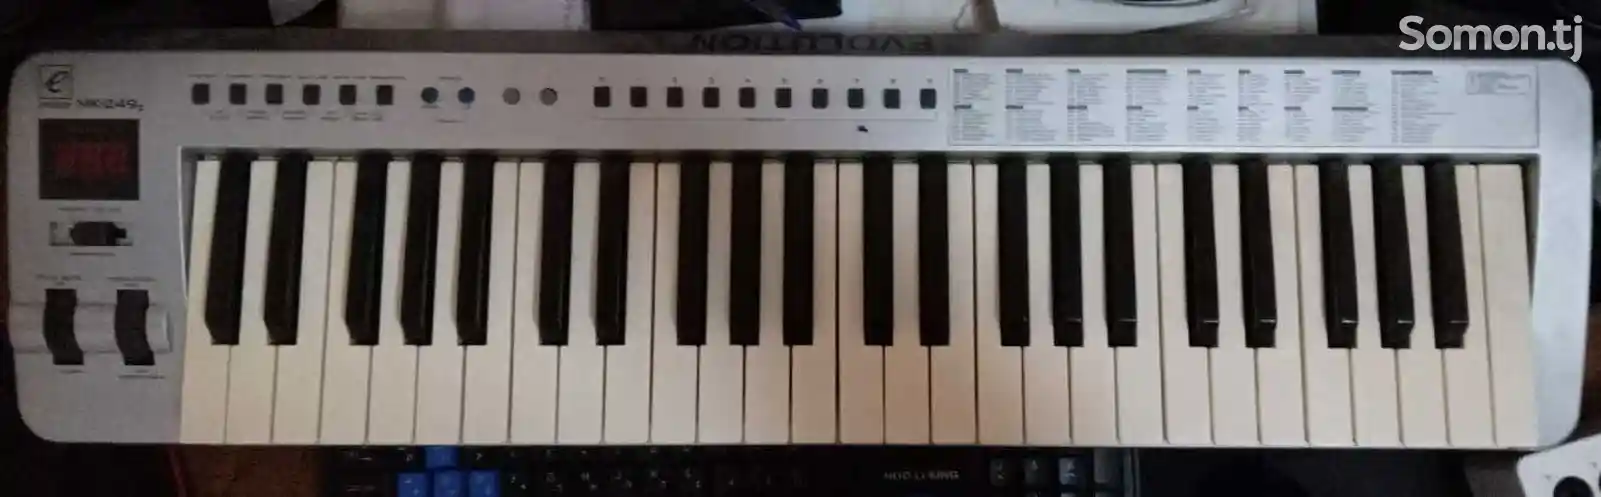 Midi-клавиатура для студии-4